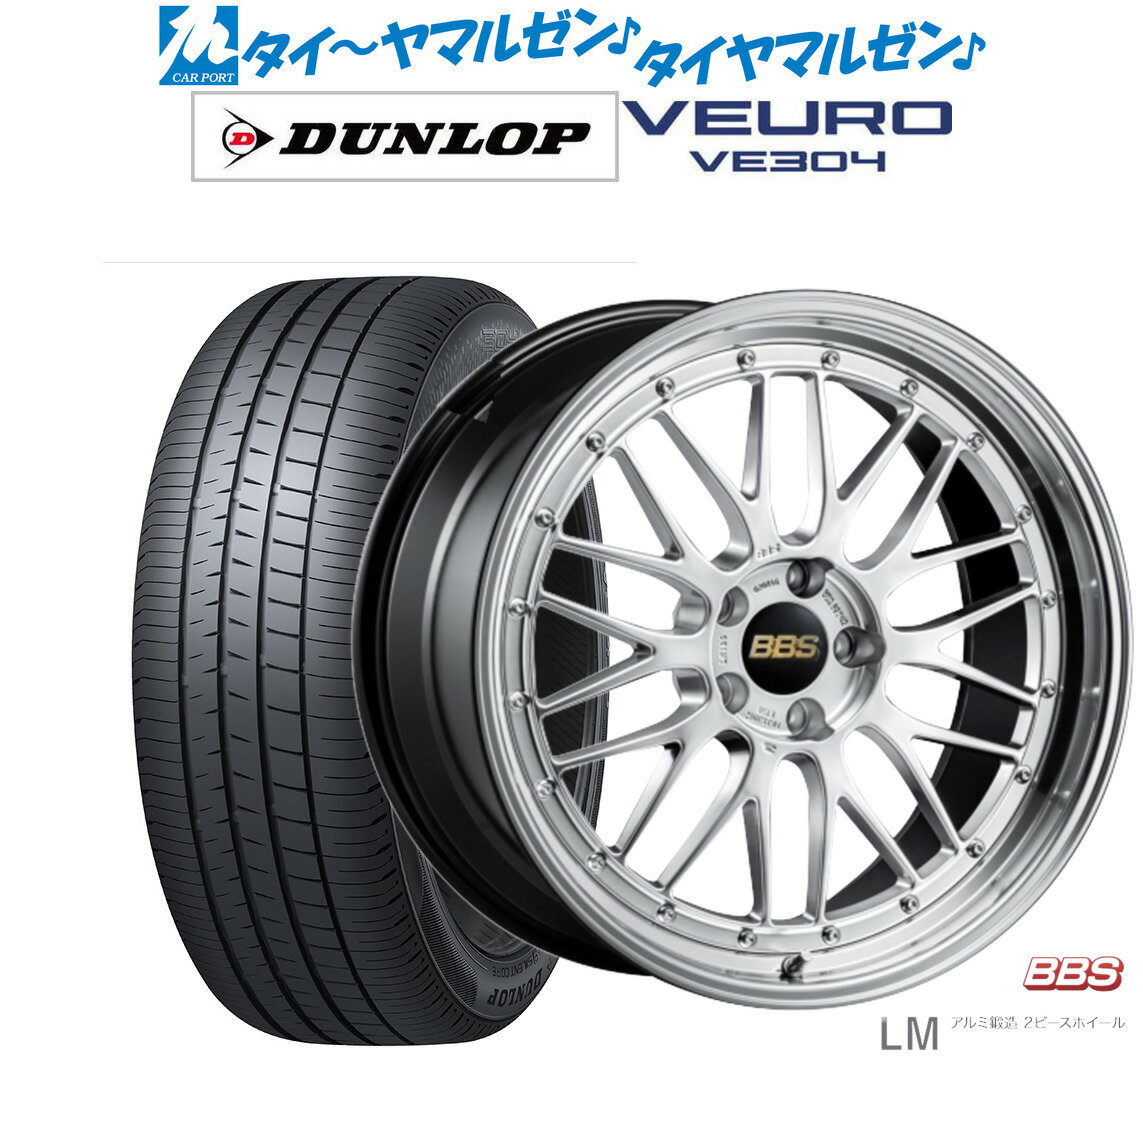 [5/20]割引クーポン配布新品 サマータイヤ ホイール4本セットBBS JAPAN LM19インチ 7.5Jダンロップ VEURO ビューロ VE304225/40R19